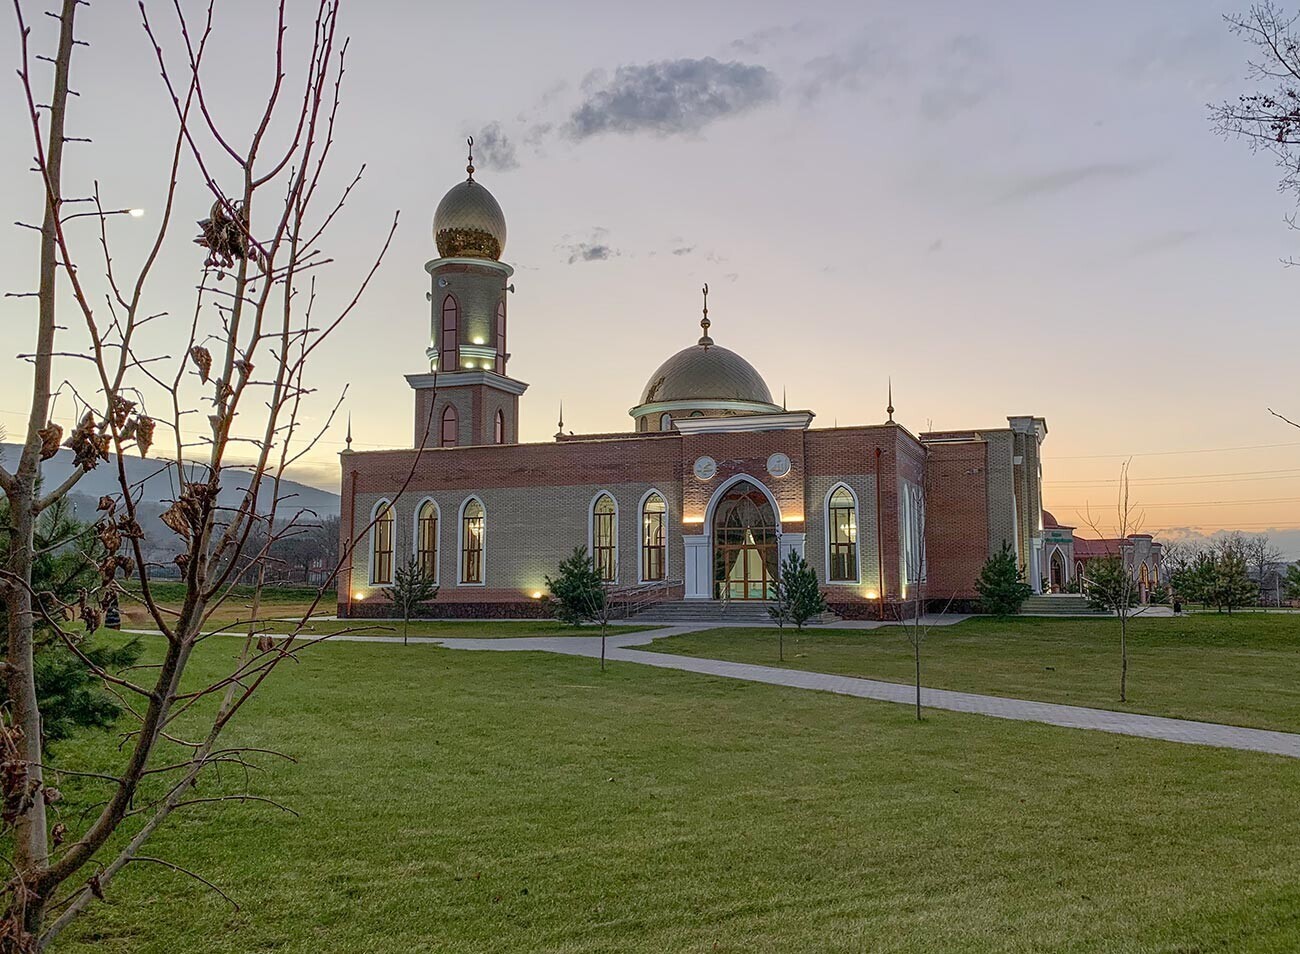 Руралните џамии во Чеченија често според архитектурата се слични на црквите.
